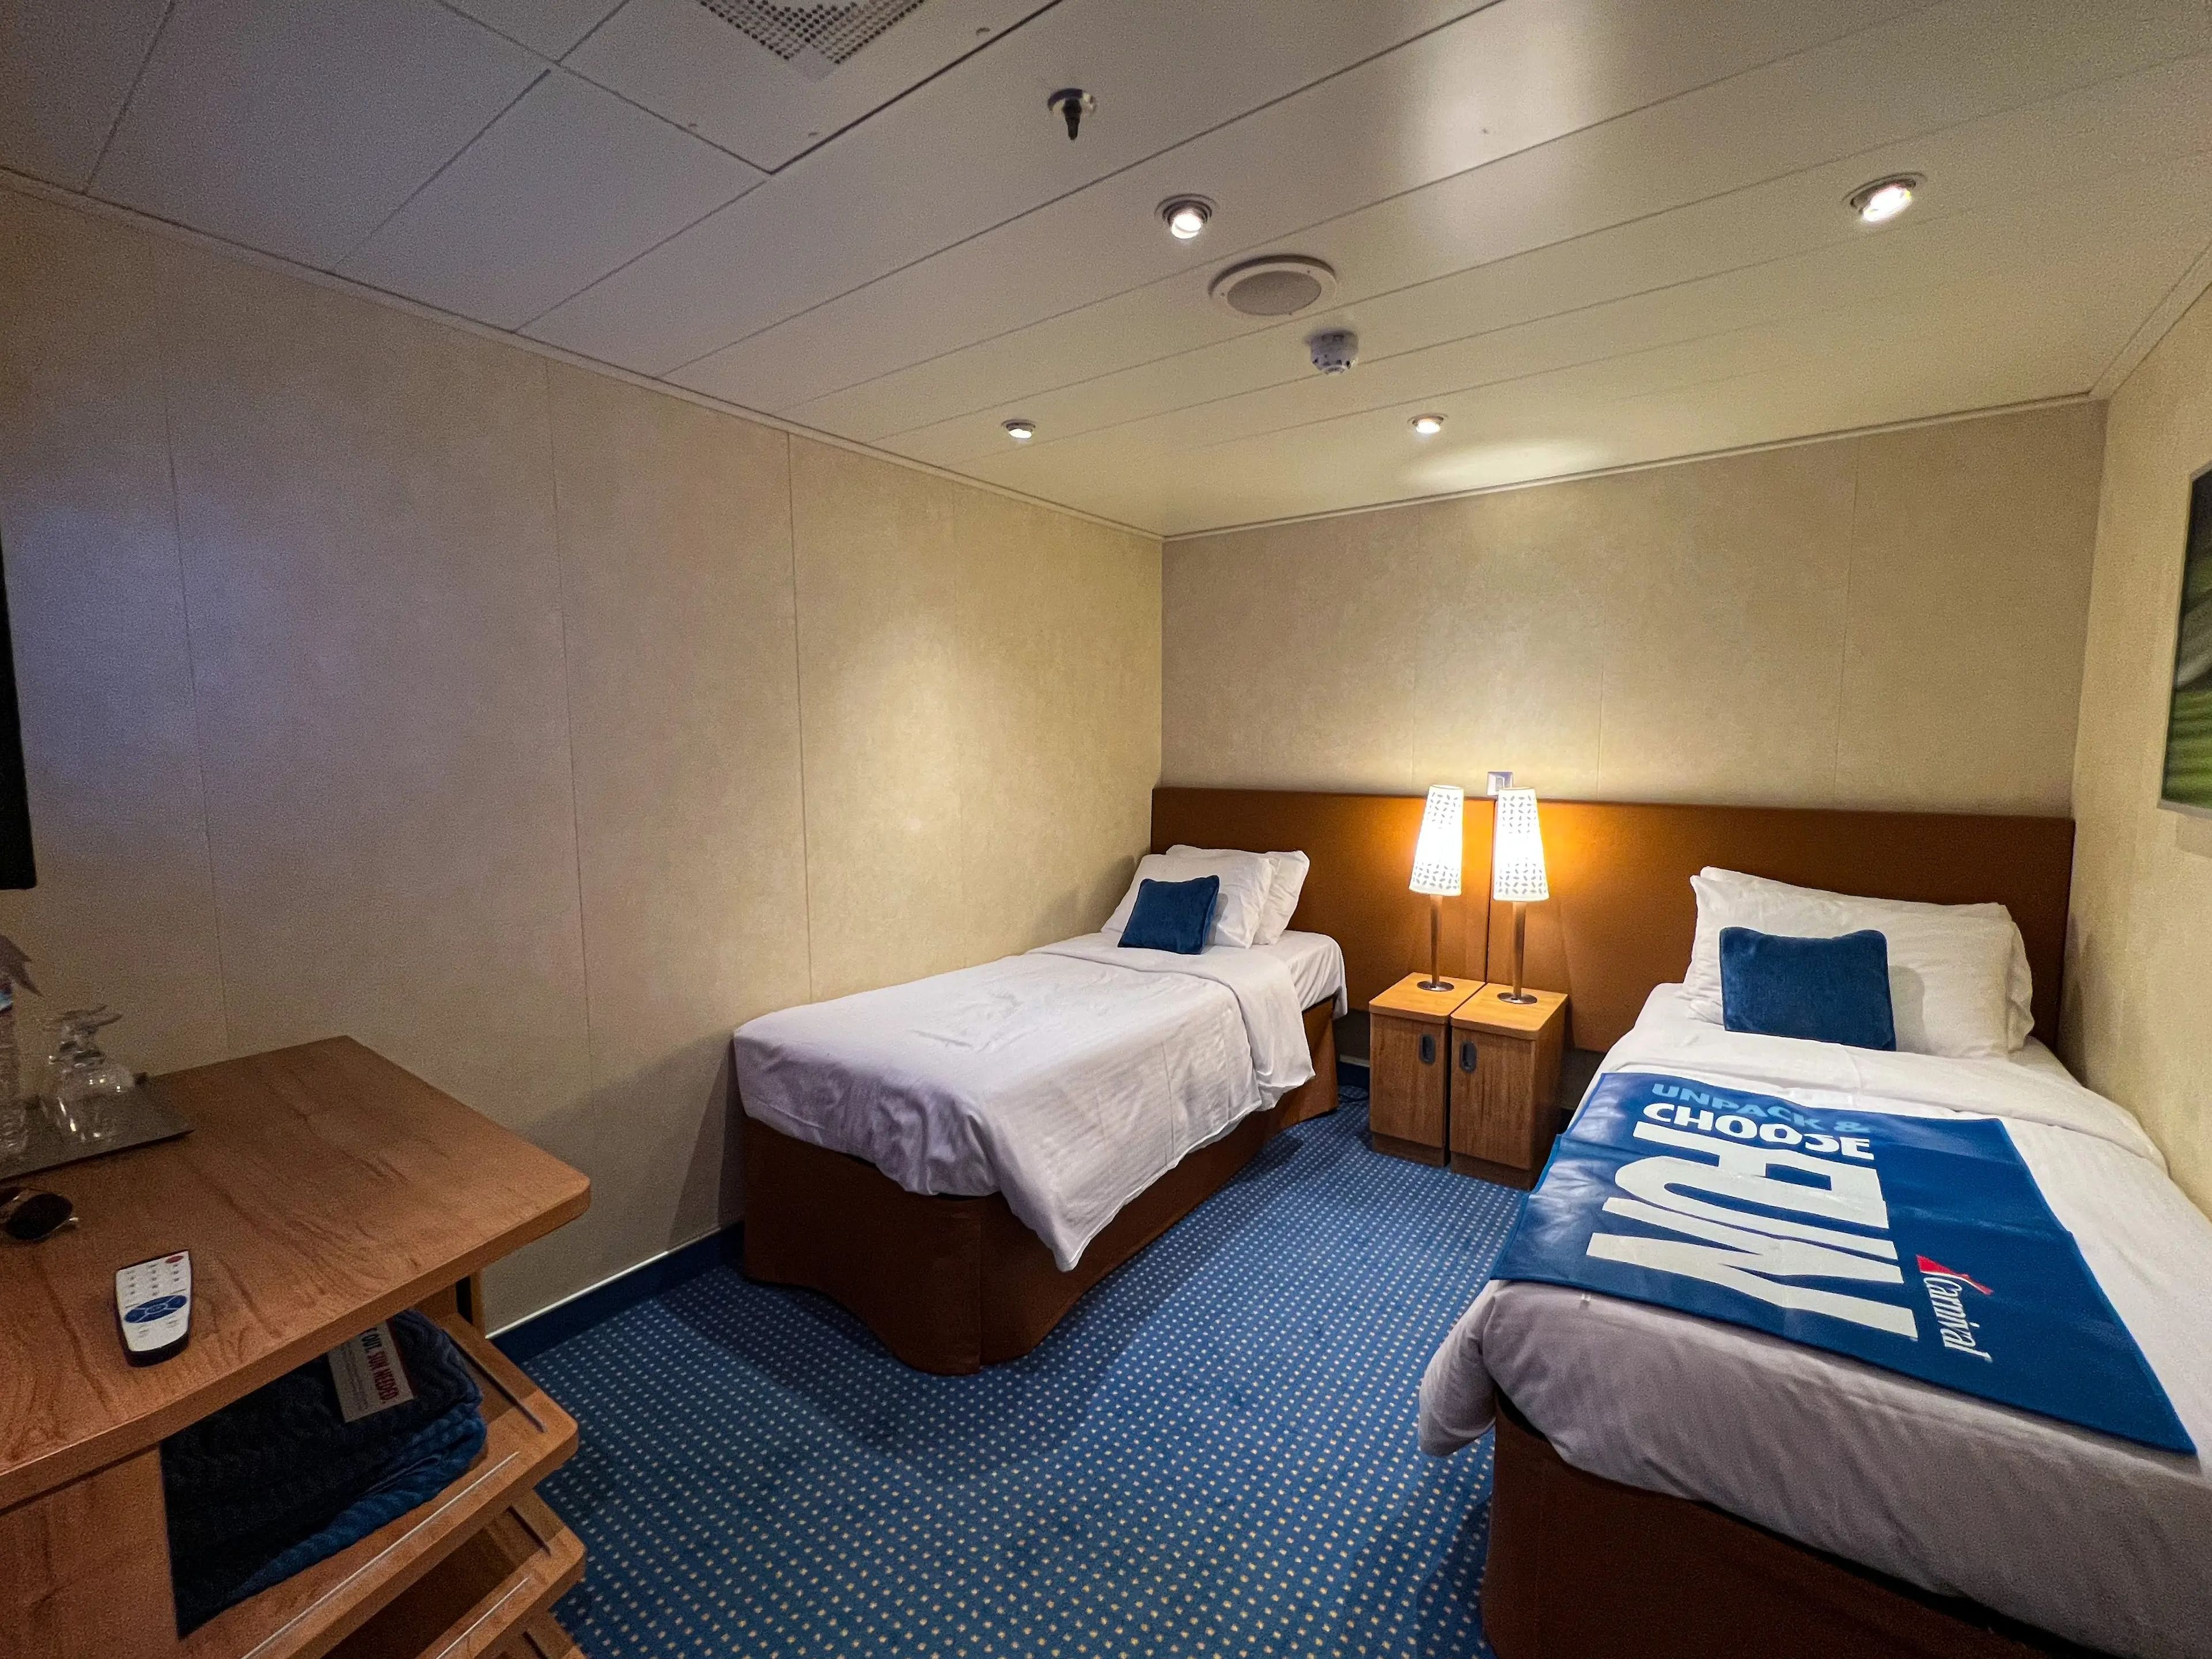 A interior cabin on a cruise ship.